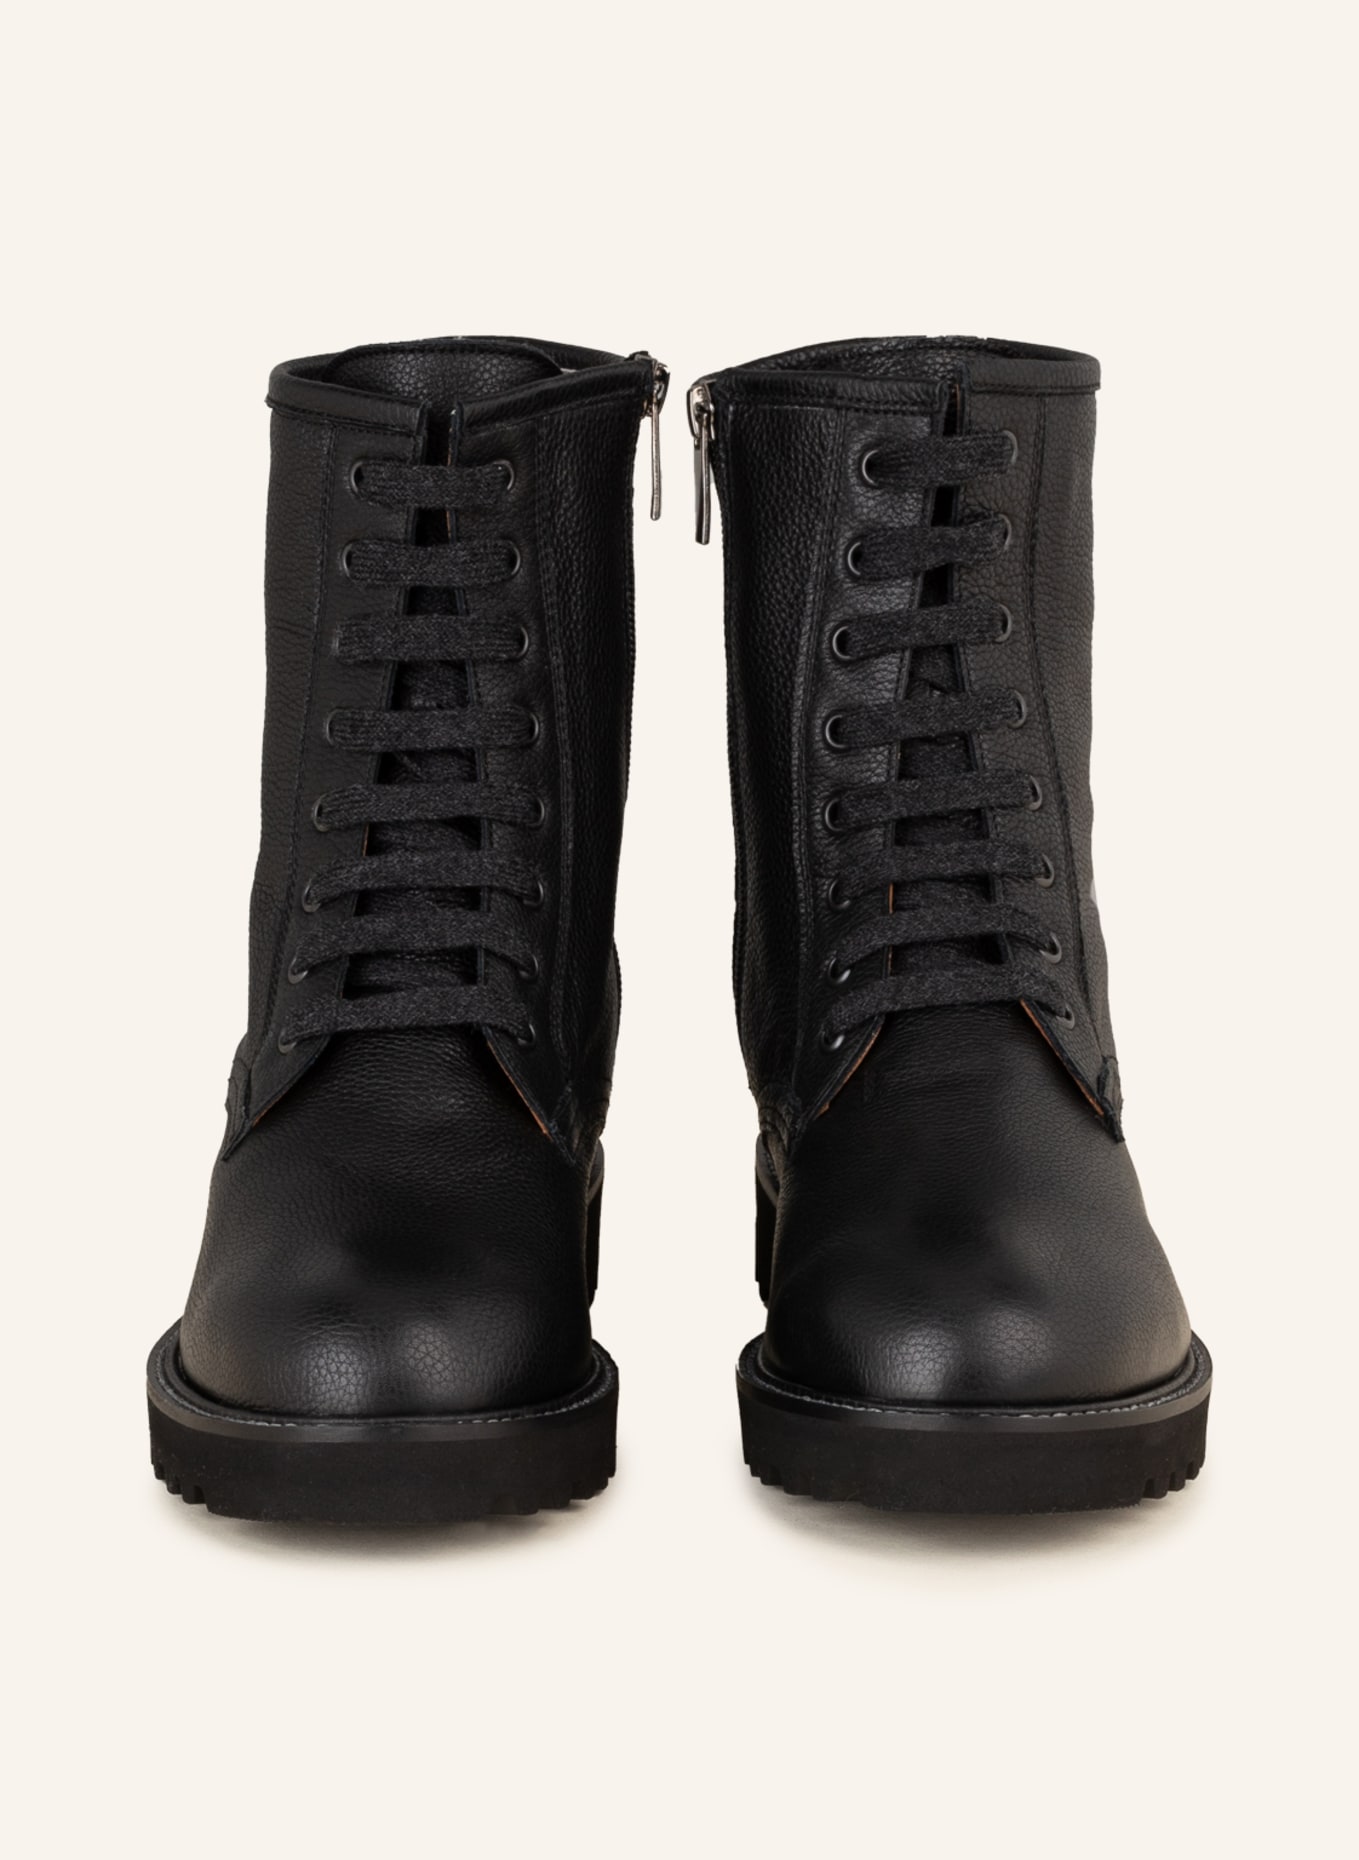 VIAMERCANTI Lace-up boots, Color: BLACK (Image 3)